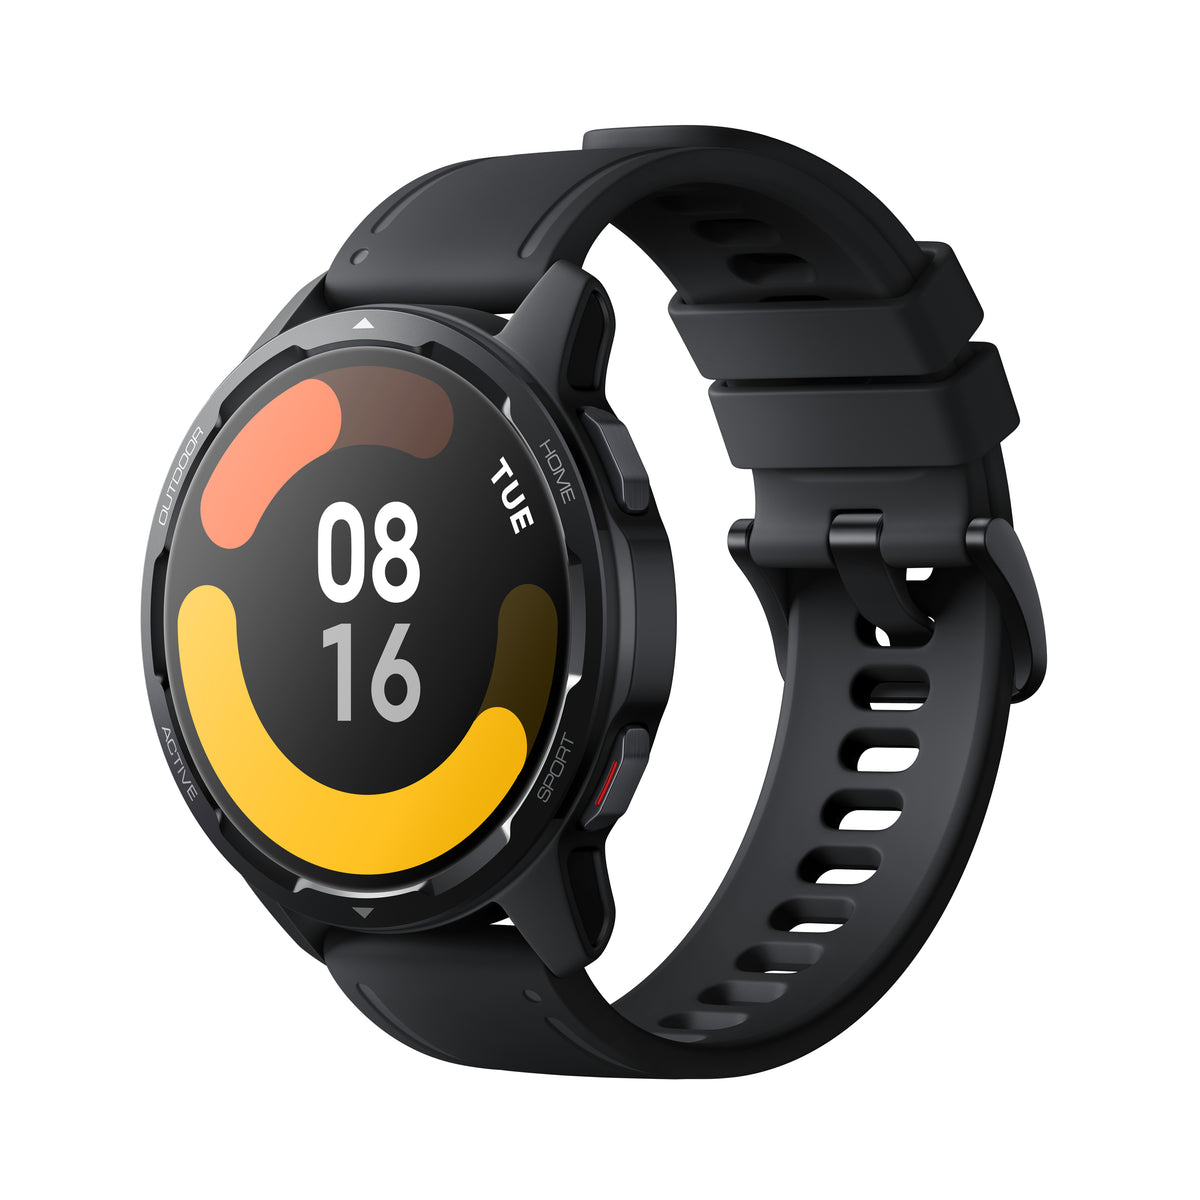 Chytré hodinky Xiaomi Watch S1 Active, černá